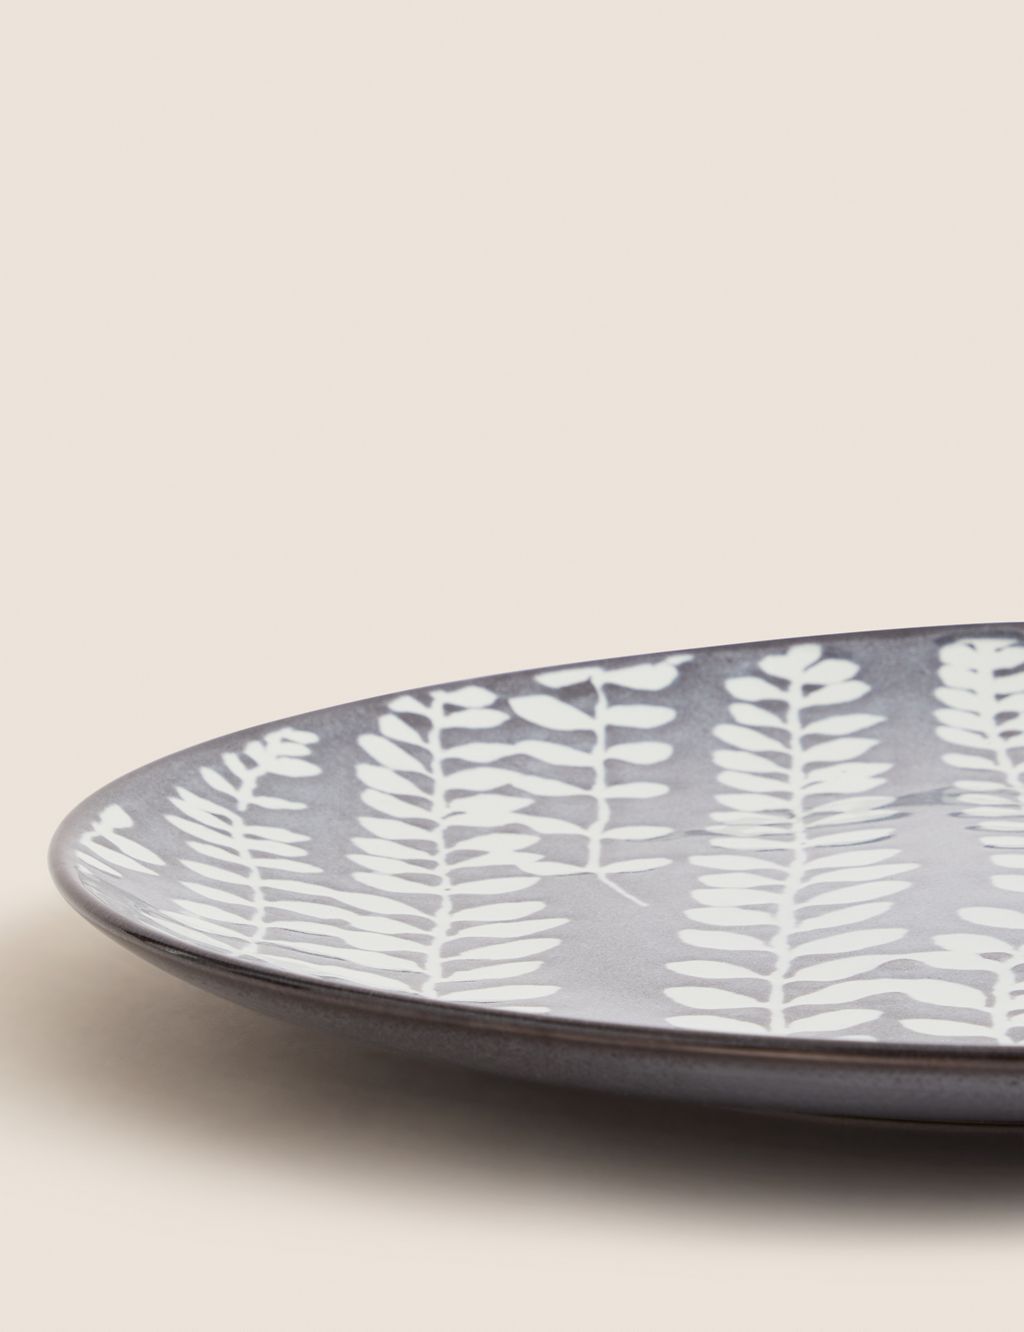 Floral Glazed Stoneware Serving Platter 4 of 4